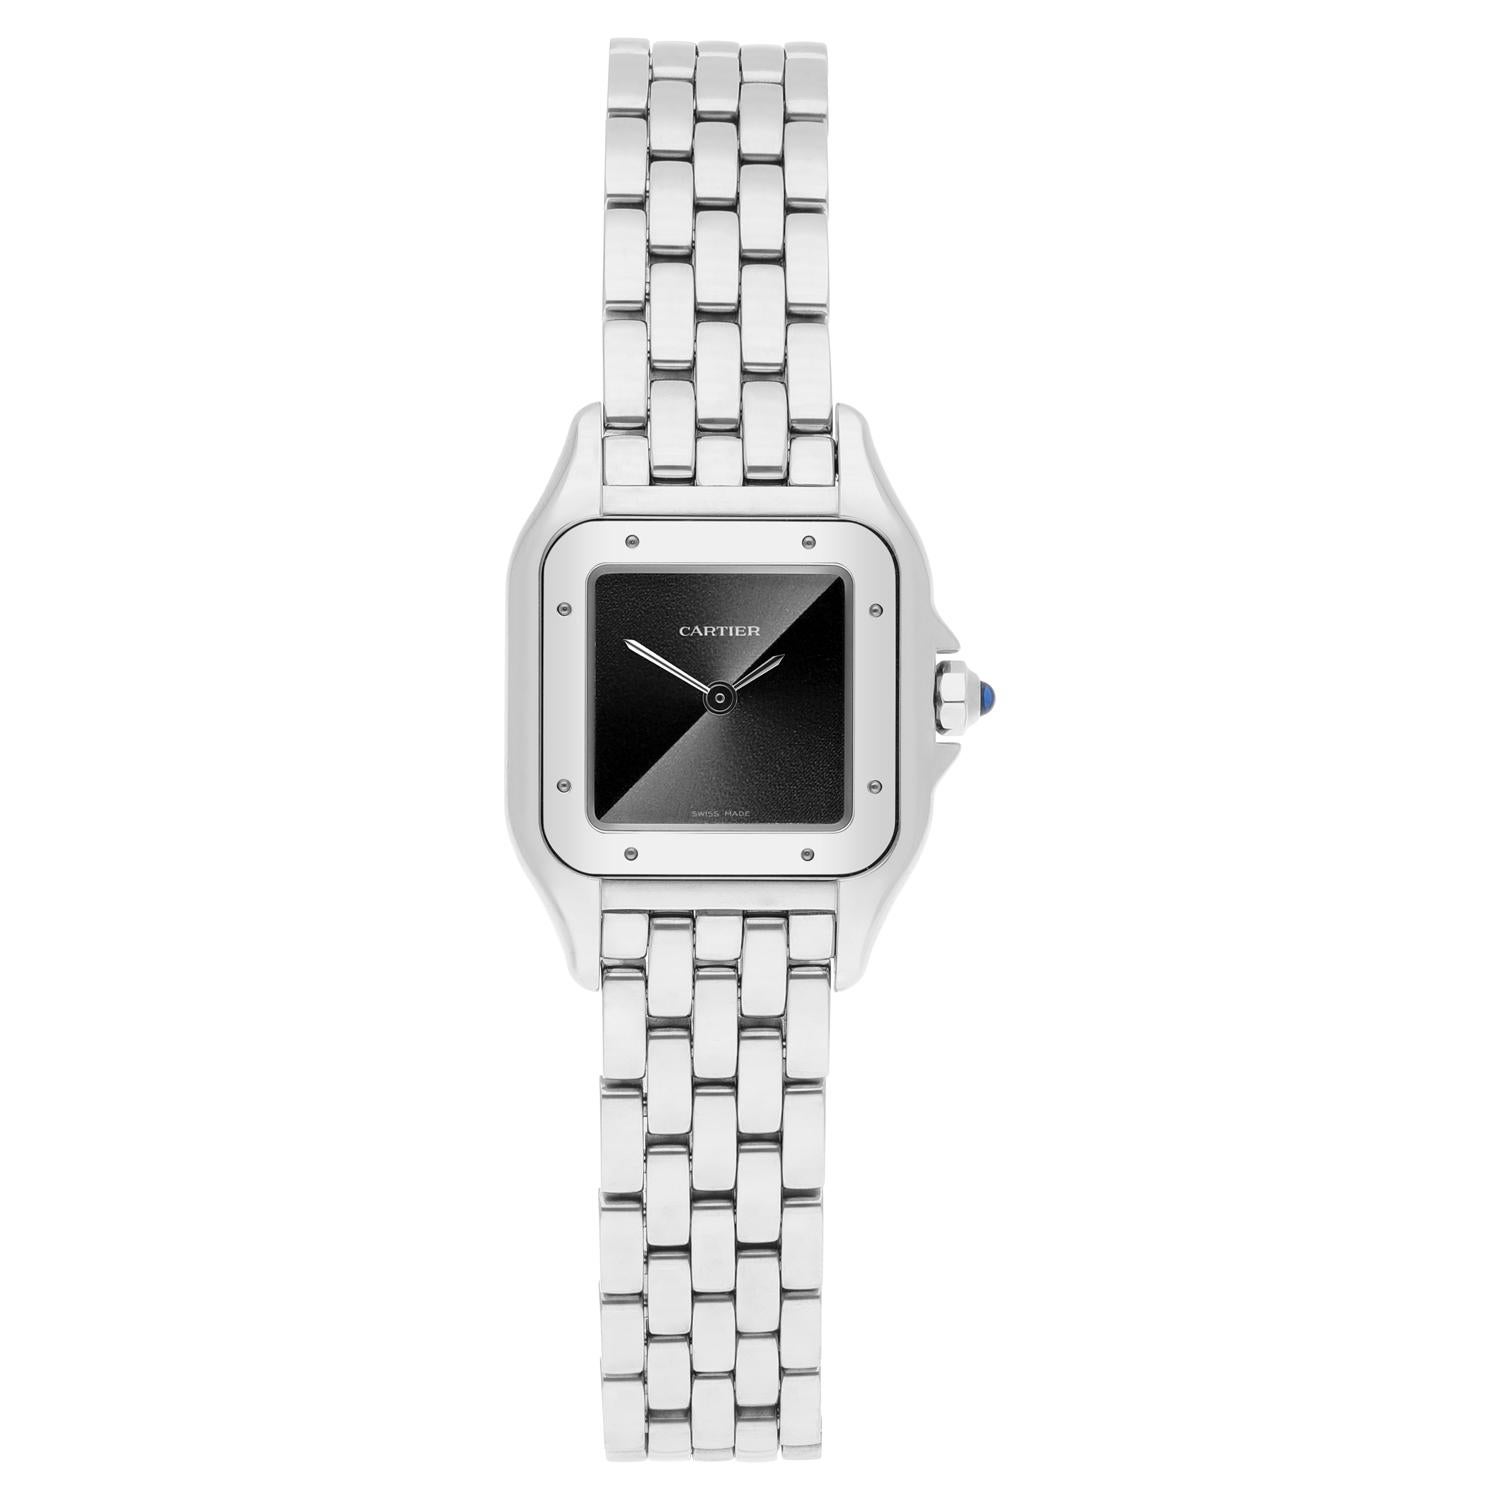 Neue Damen Cartier Panthere De Cartier kleine graue Zifferblatt Stahl Uhr WSPN0010 2022

Erhöhen Sie Ihren Stil mit dieser atemberaubenden Damenarmbanduhr aus der Kollektion Panthere De Cartier von Cartier. Dieser luxuriöse Zeitmesser ist aus